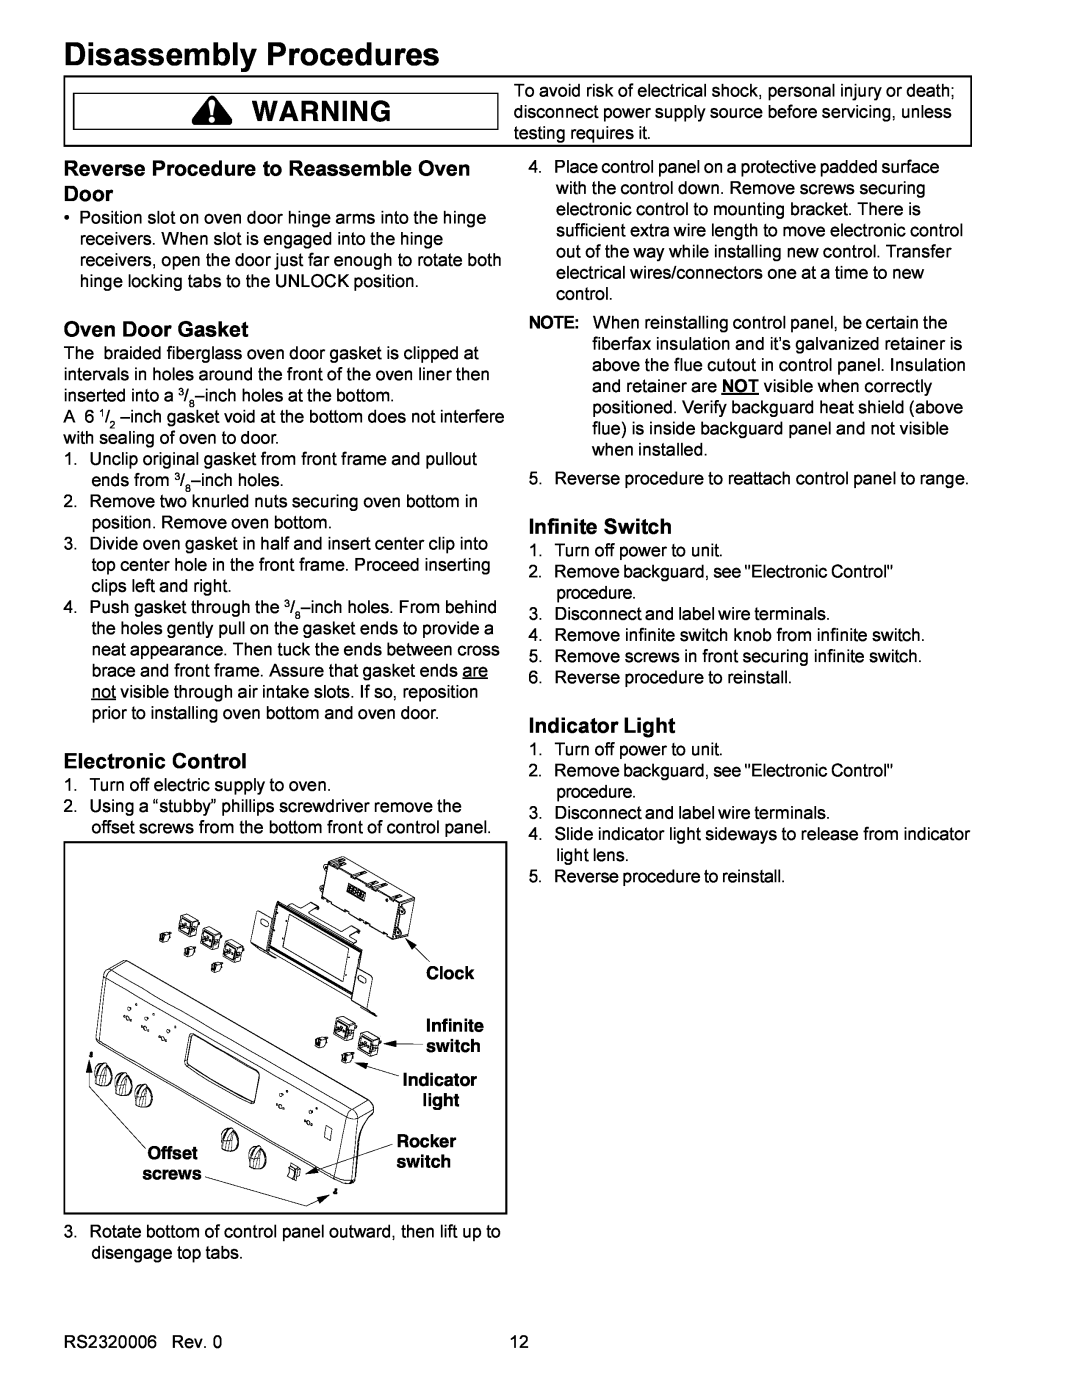 Amana RS2320006 Reverse Procedure to Reassemble Oven Door, Oven Door Gasket, Infinite Switch, Indicator Light, Clock 